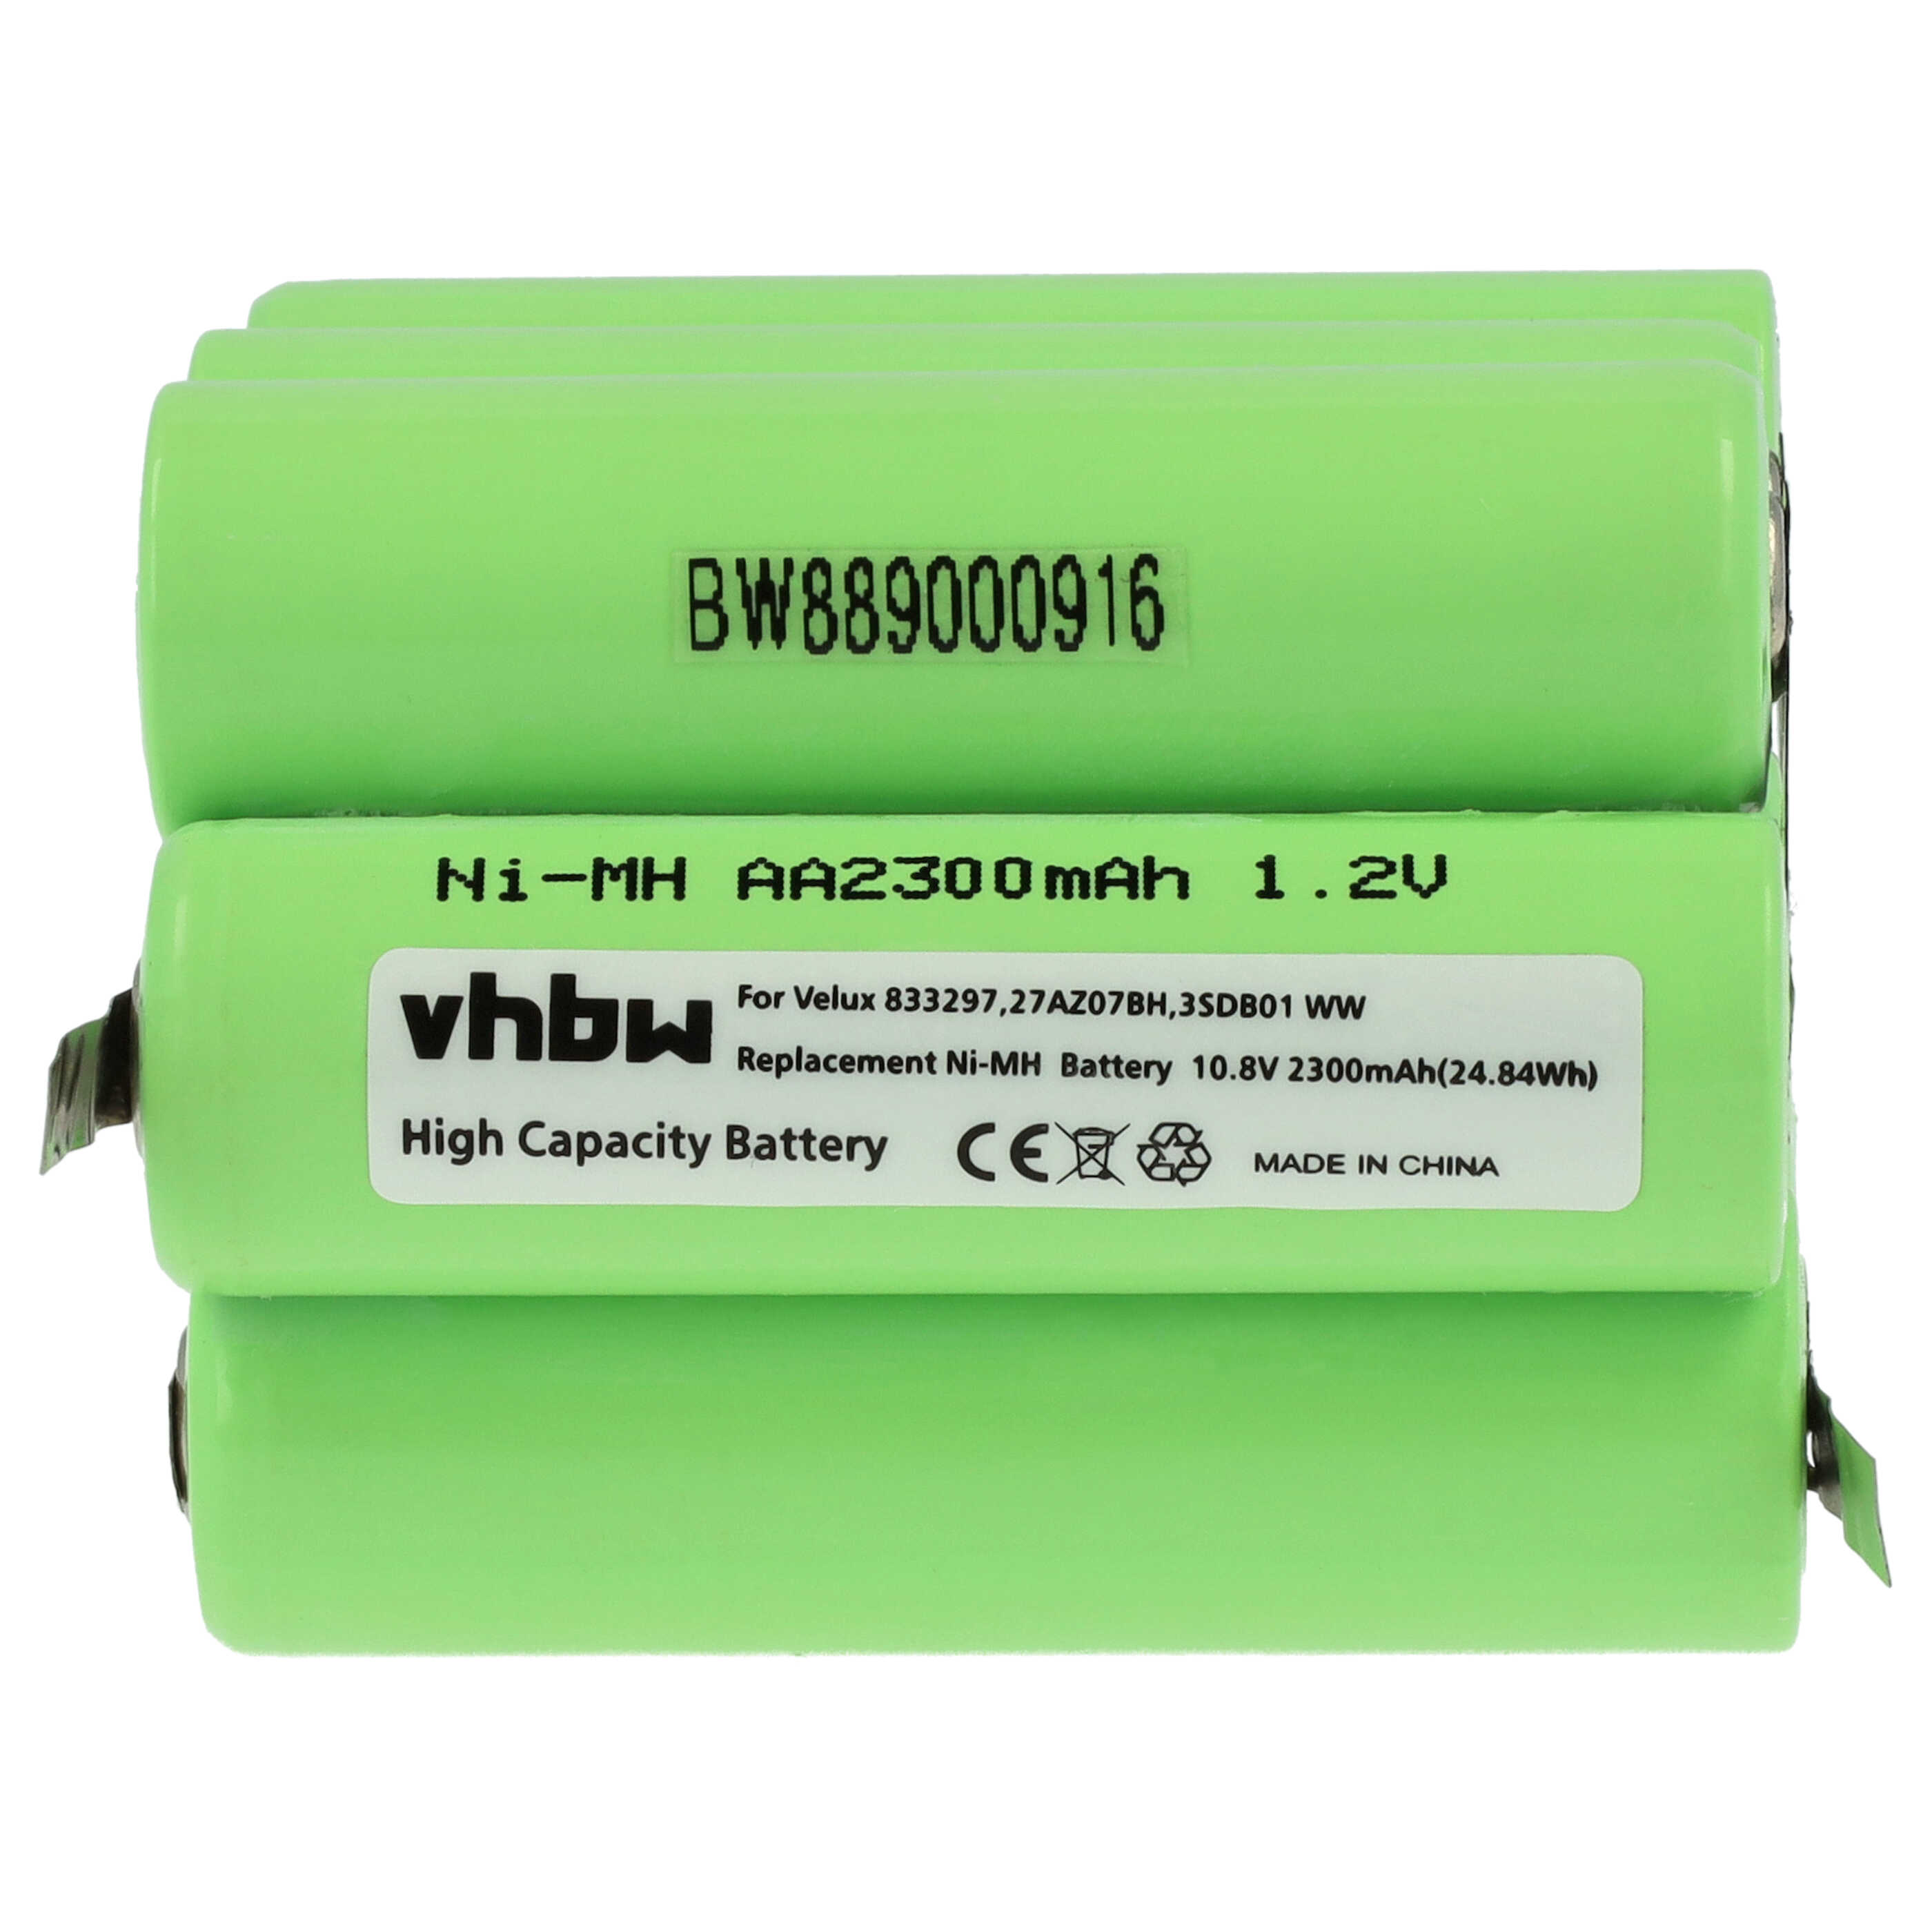 Akumulator do rolet / żaluzji dachowych zamiennik 833297, 27AZ07BH, 3SD B01 WW - 2300 mAh 10,8 V NiMH